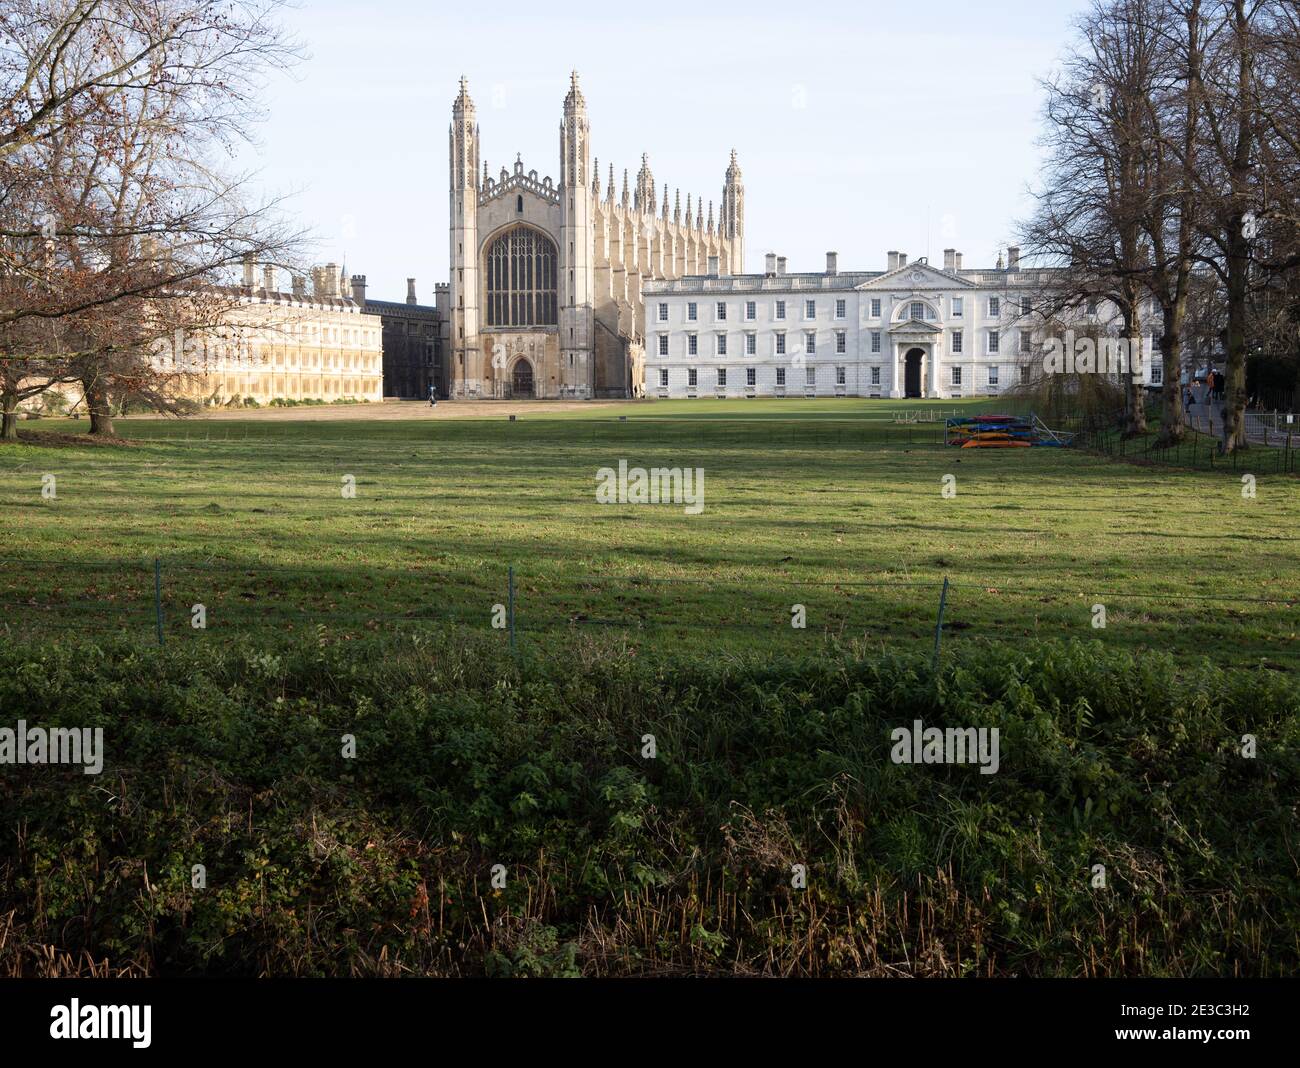 Les dos de Cambridge montrant la chapelle ironique de Kings College Angleterre Banque D'Images